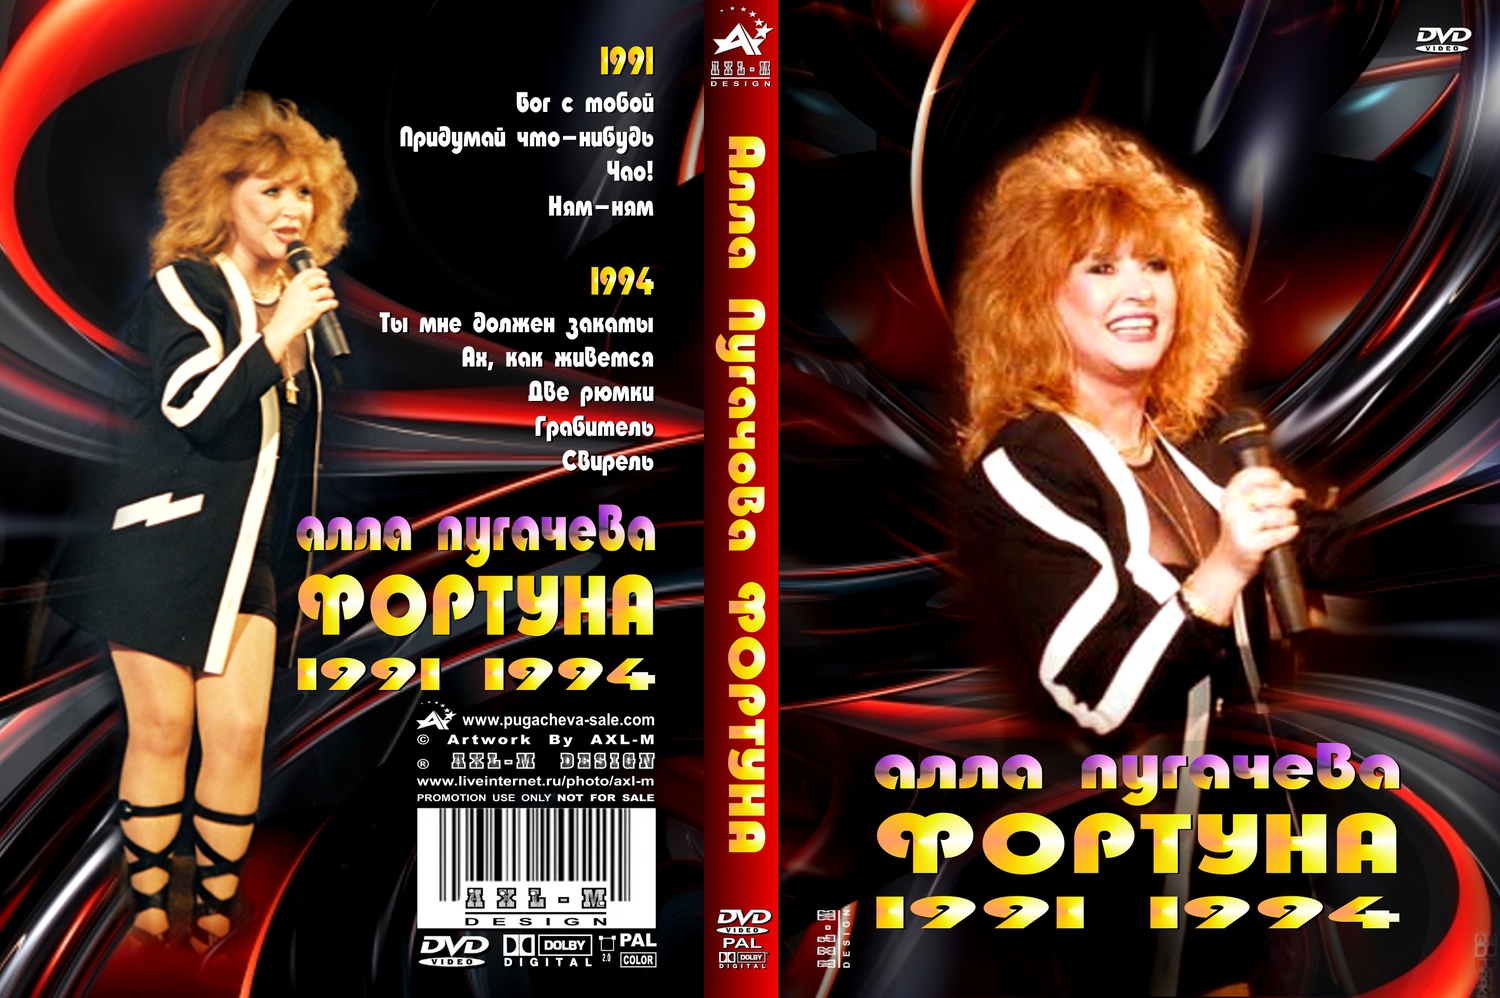 Пугачева сборник песен. Концерты Пугачевой 1980.